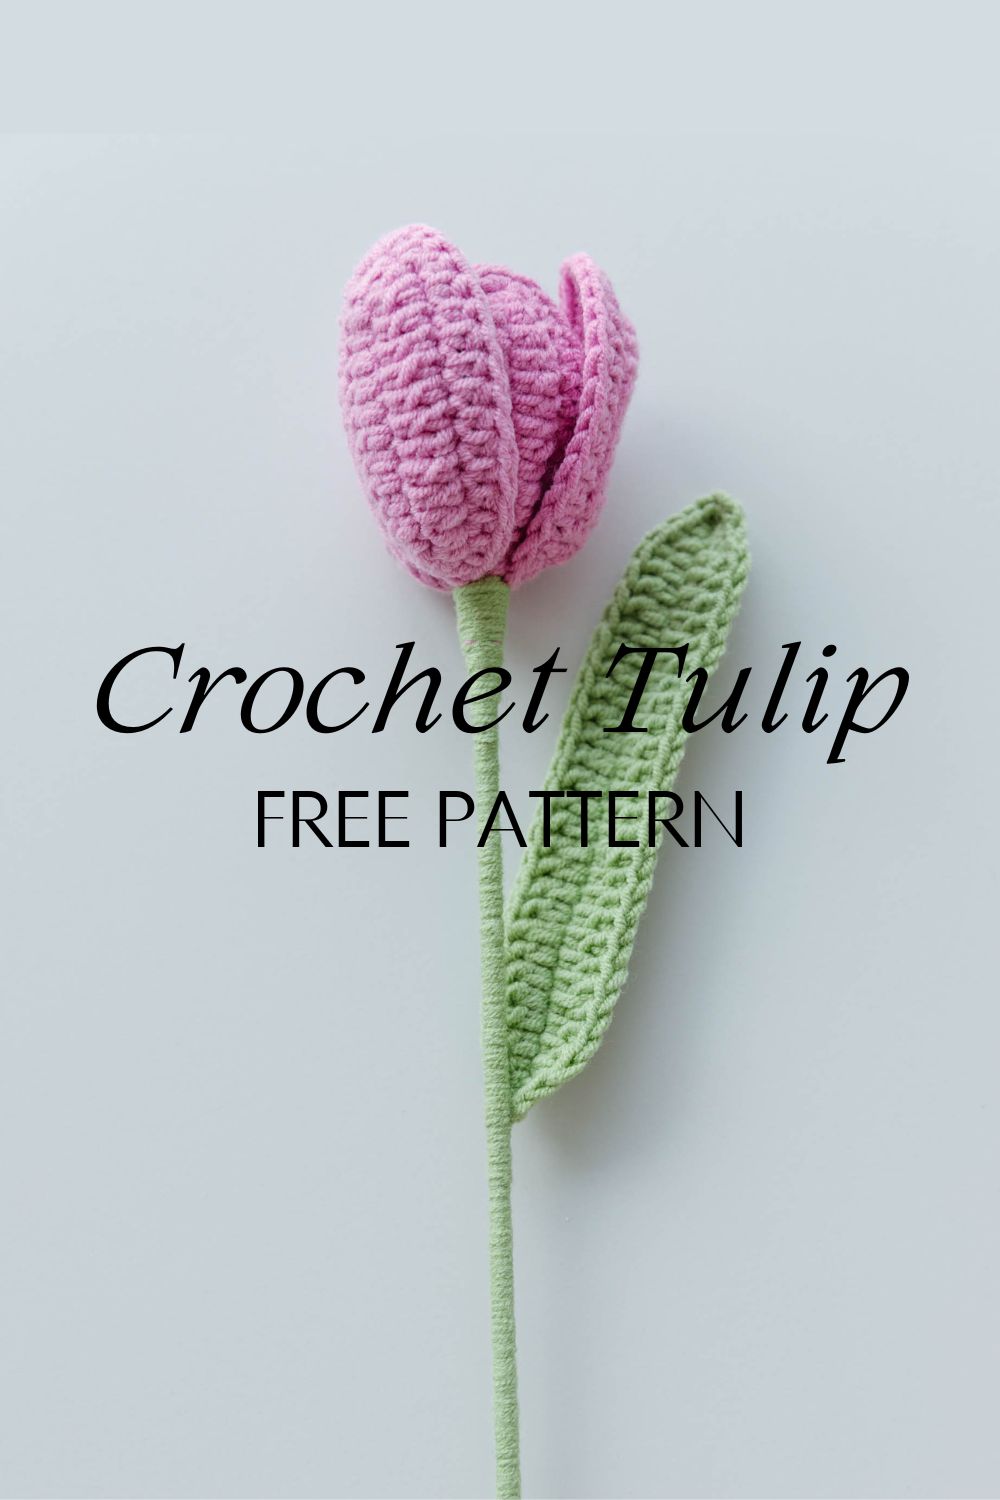 crochetflower crochettulips handmade